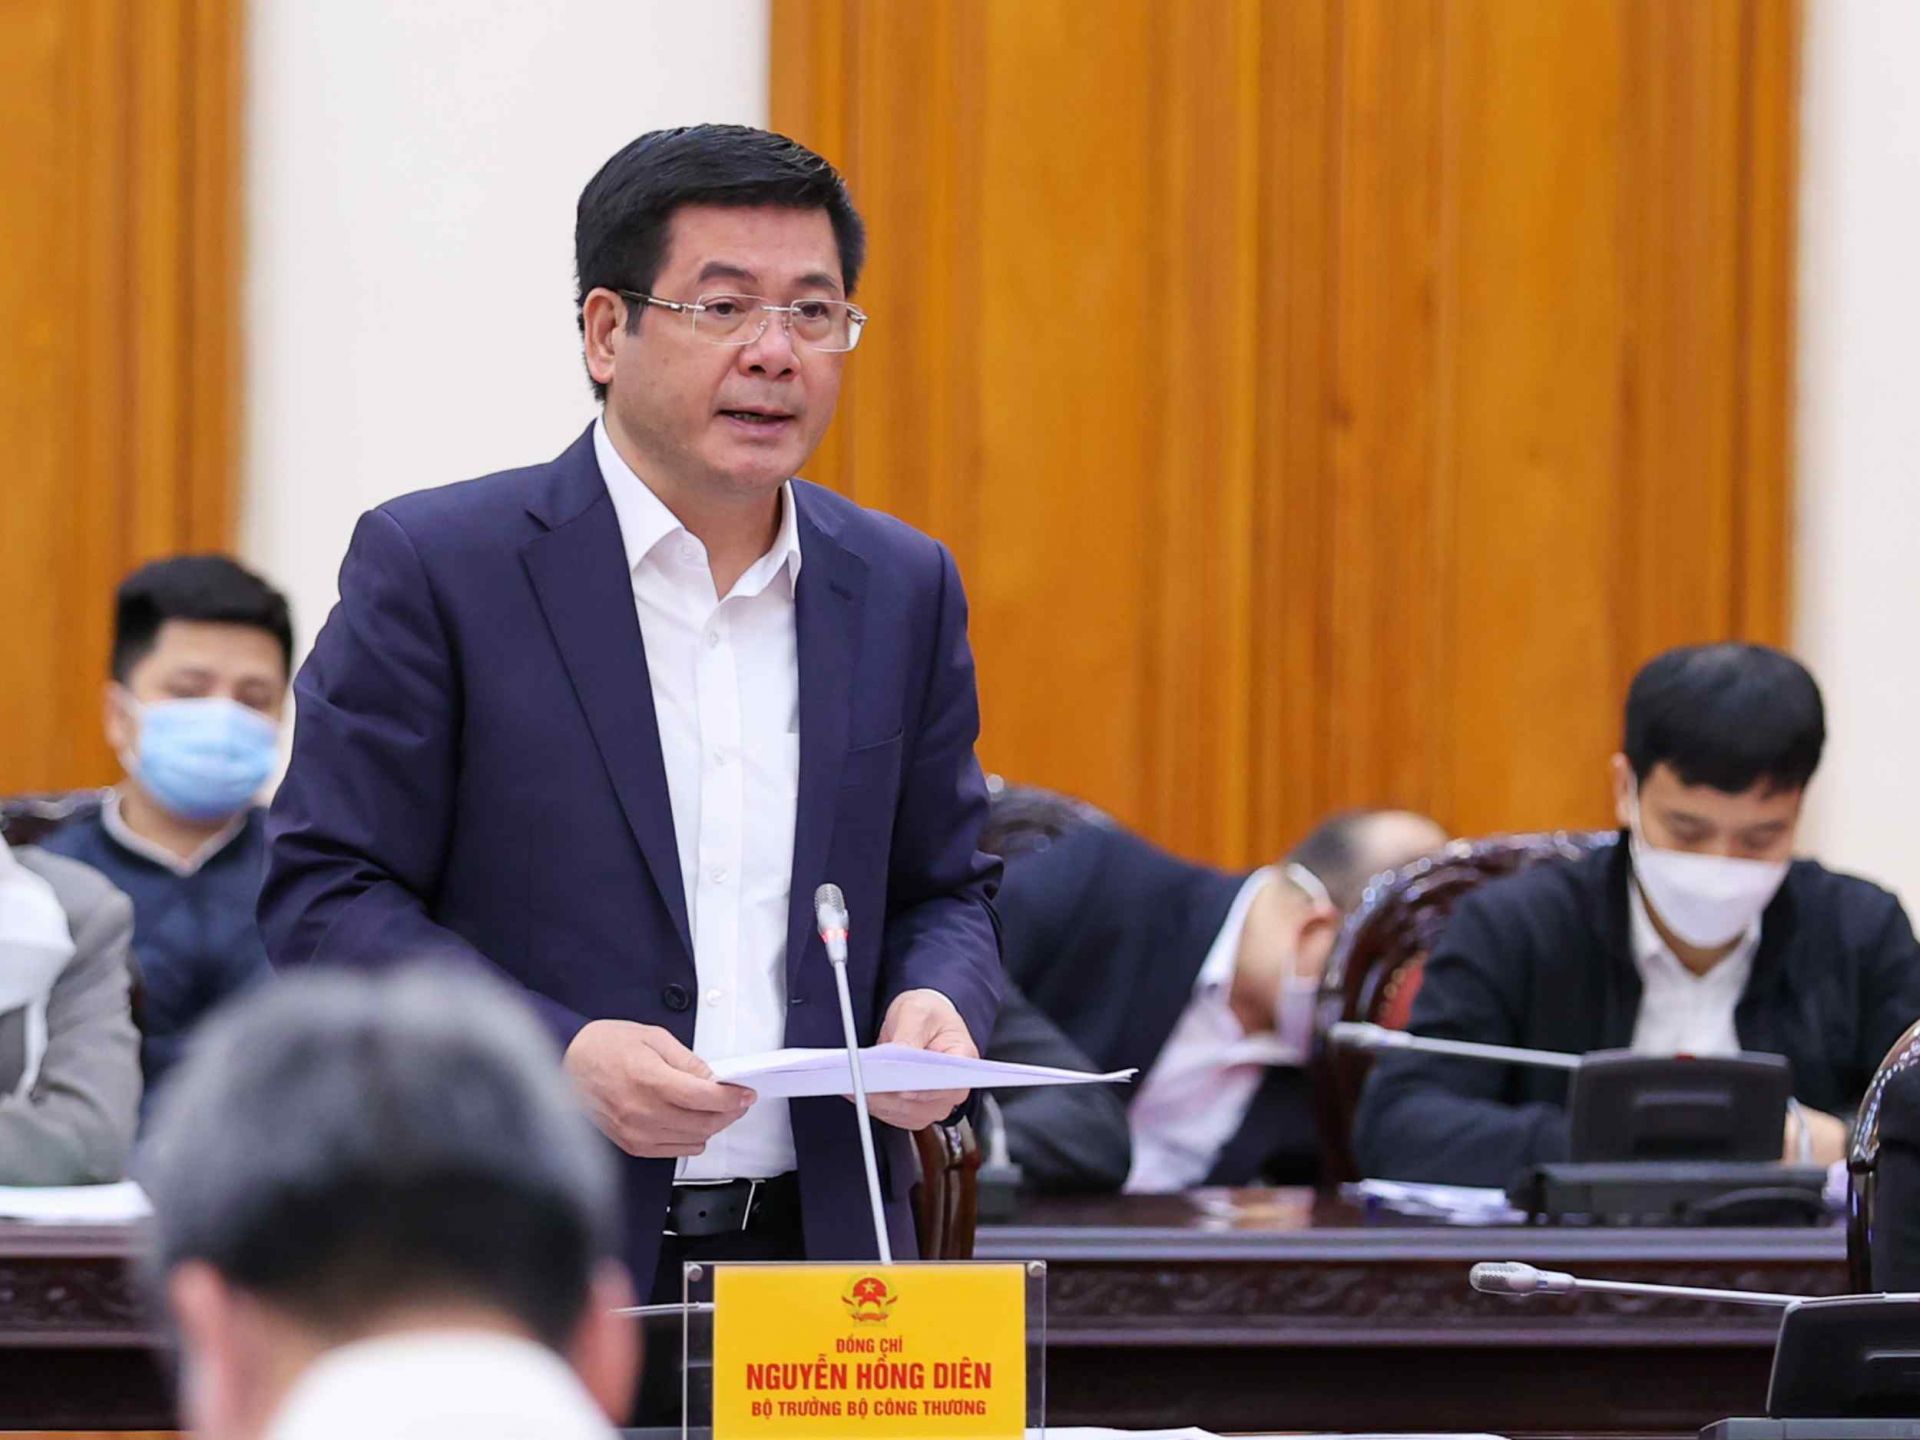 Bộ trưởng Bộ Công Thương Nguyễn Hồng Diên báo cáo tại cuộc họp (Ảnh: VGP/Nhật Bắc)